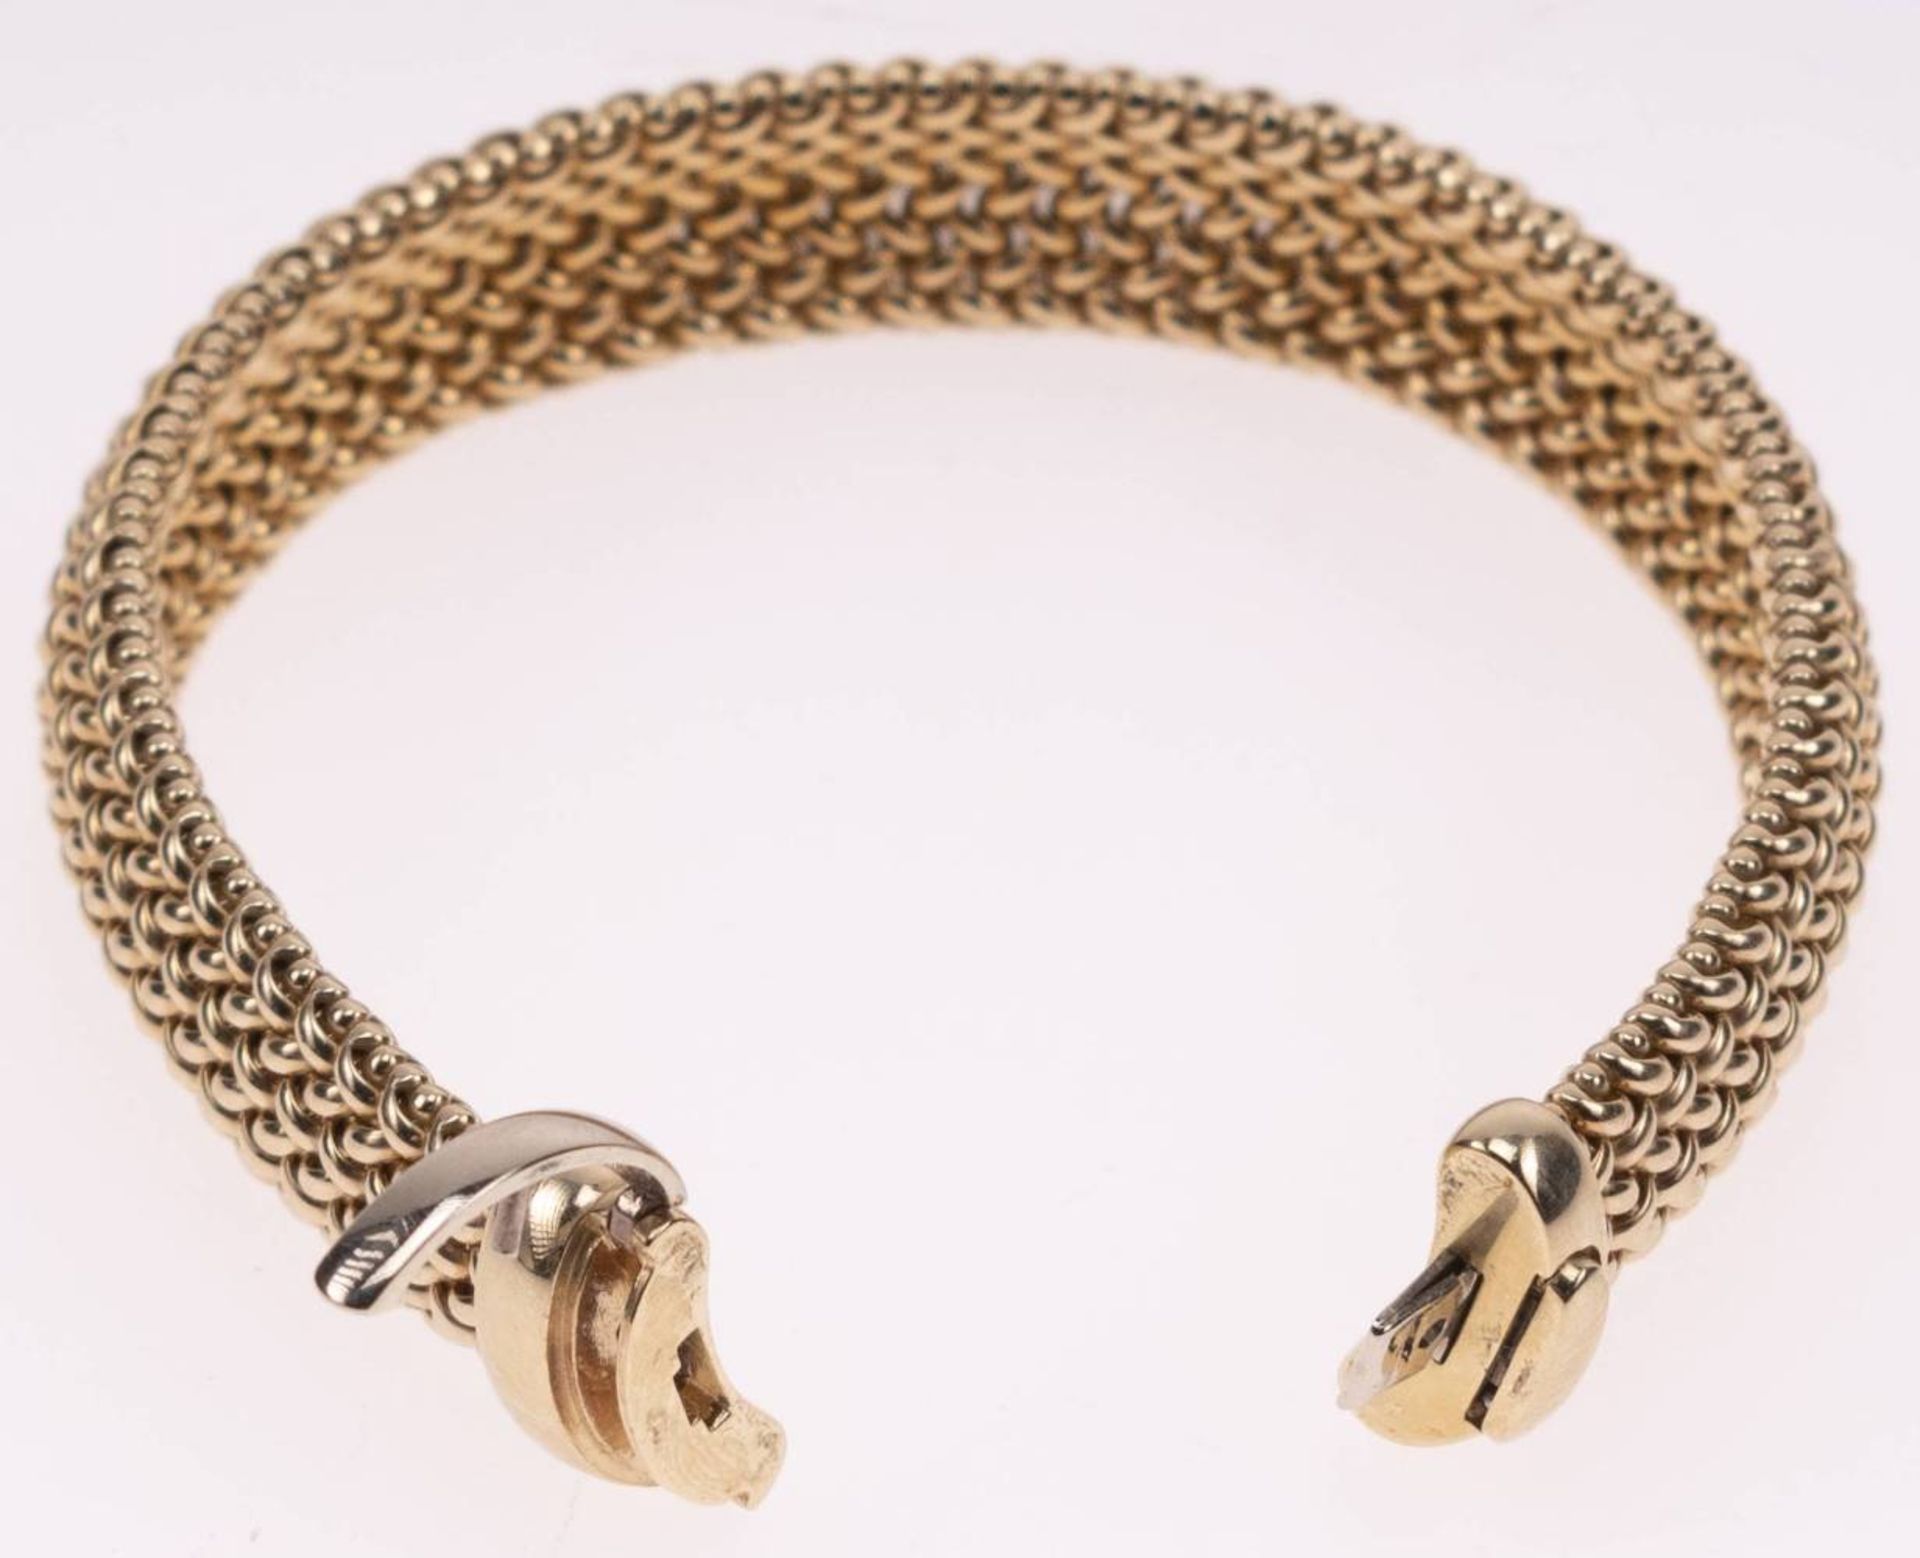 Milanaise Armband, 585 Gelbgold, Länge 19,5cm, Steckschließe mit Clipverschluss, fast ungetragen, - Image 5 of 6